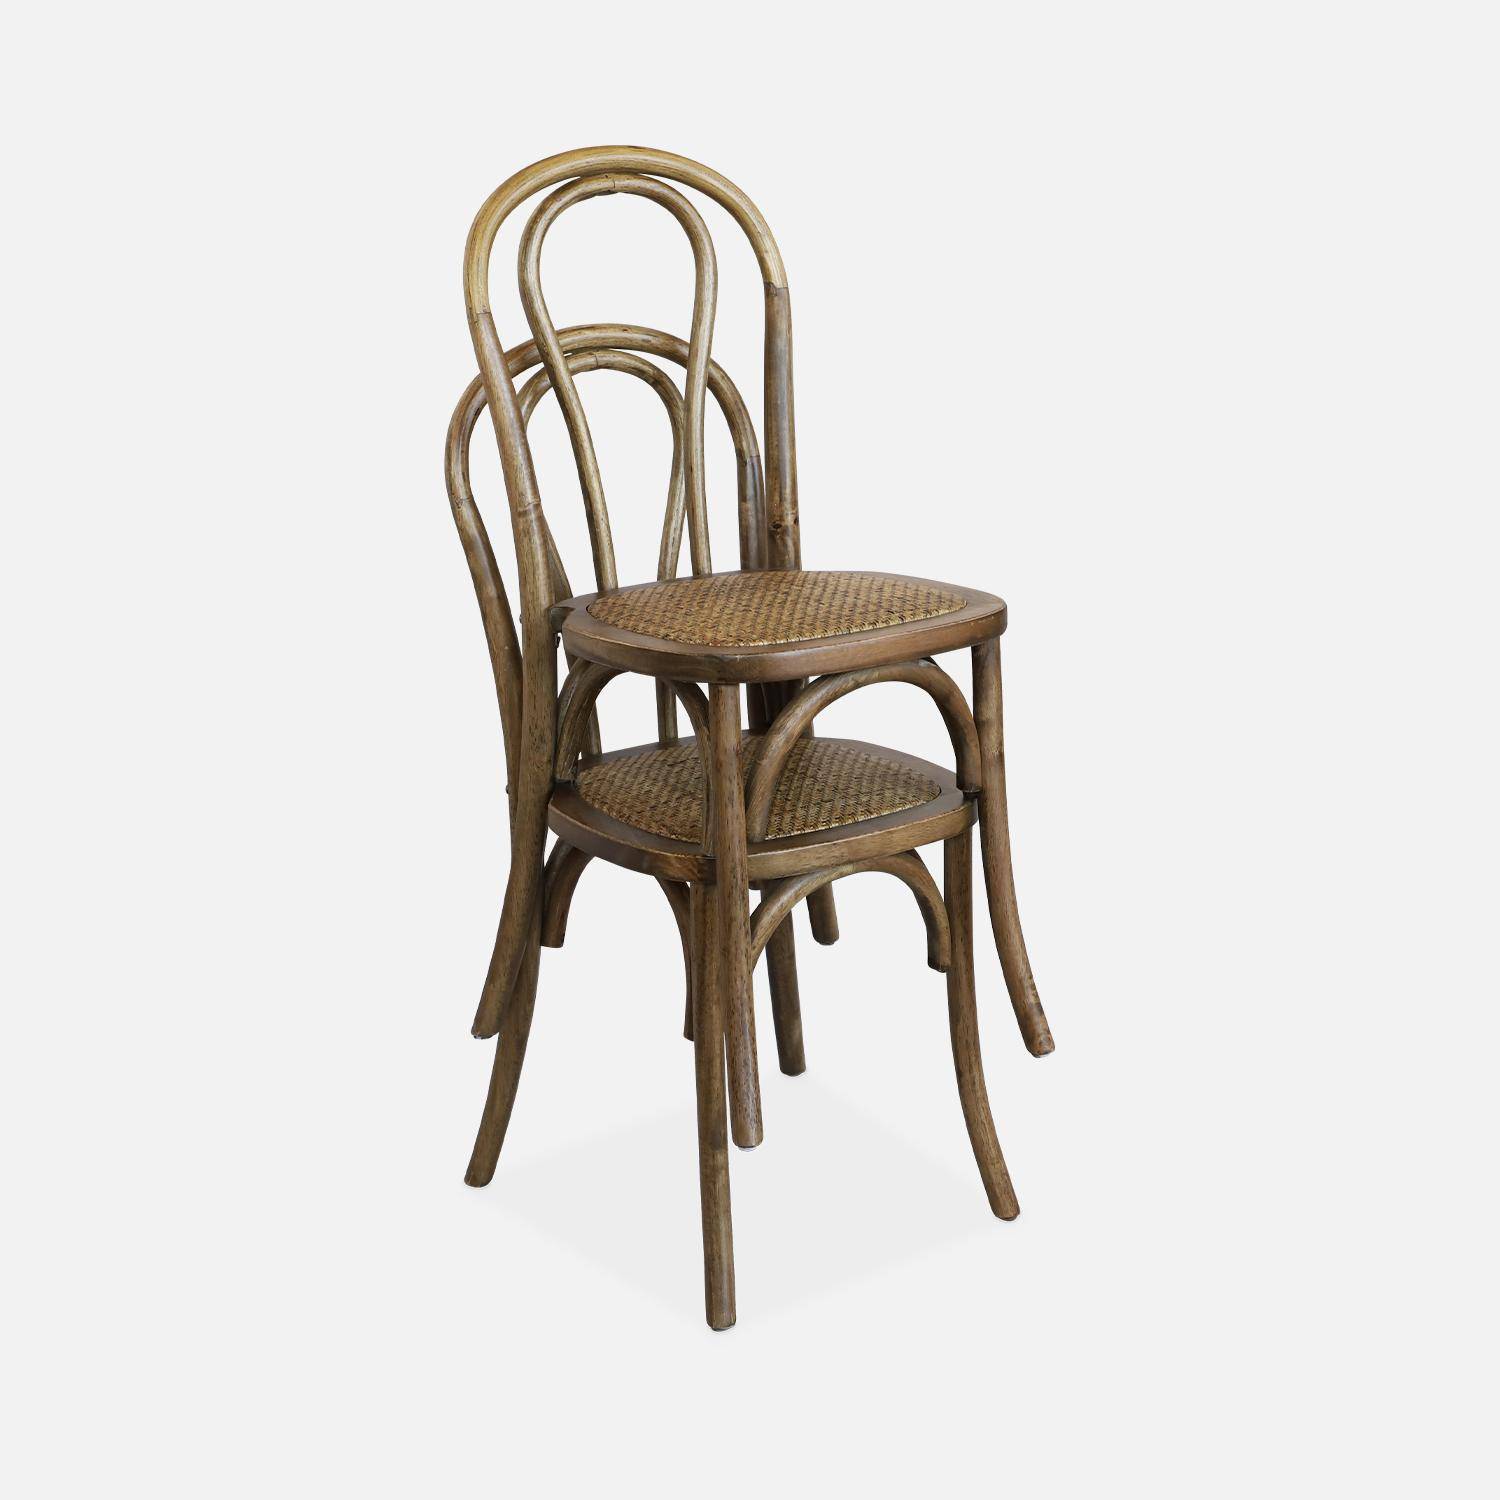 Juego de dos sillas vintage de madera con asiento de ratán y respaldo redondeado en marrón antiguo Photo4